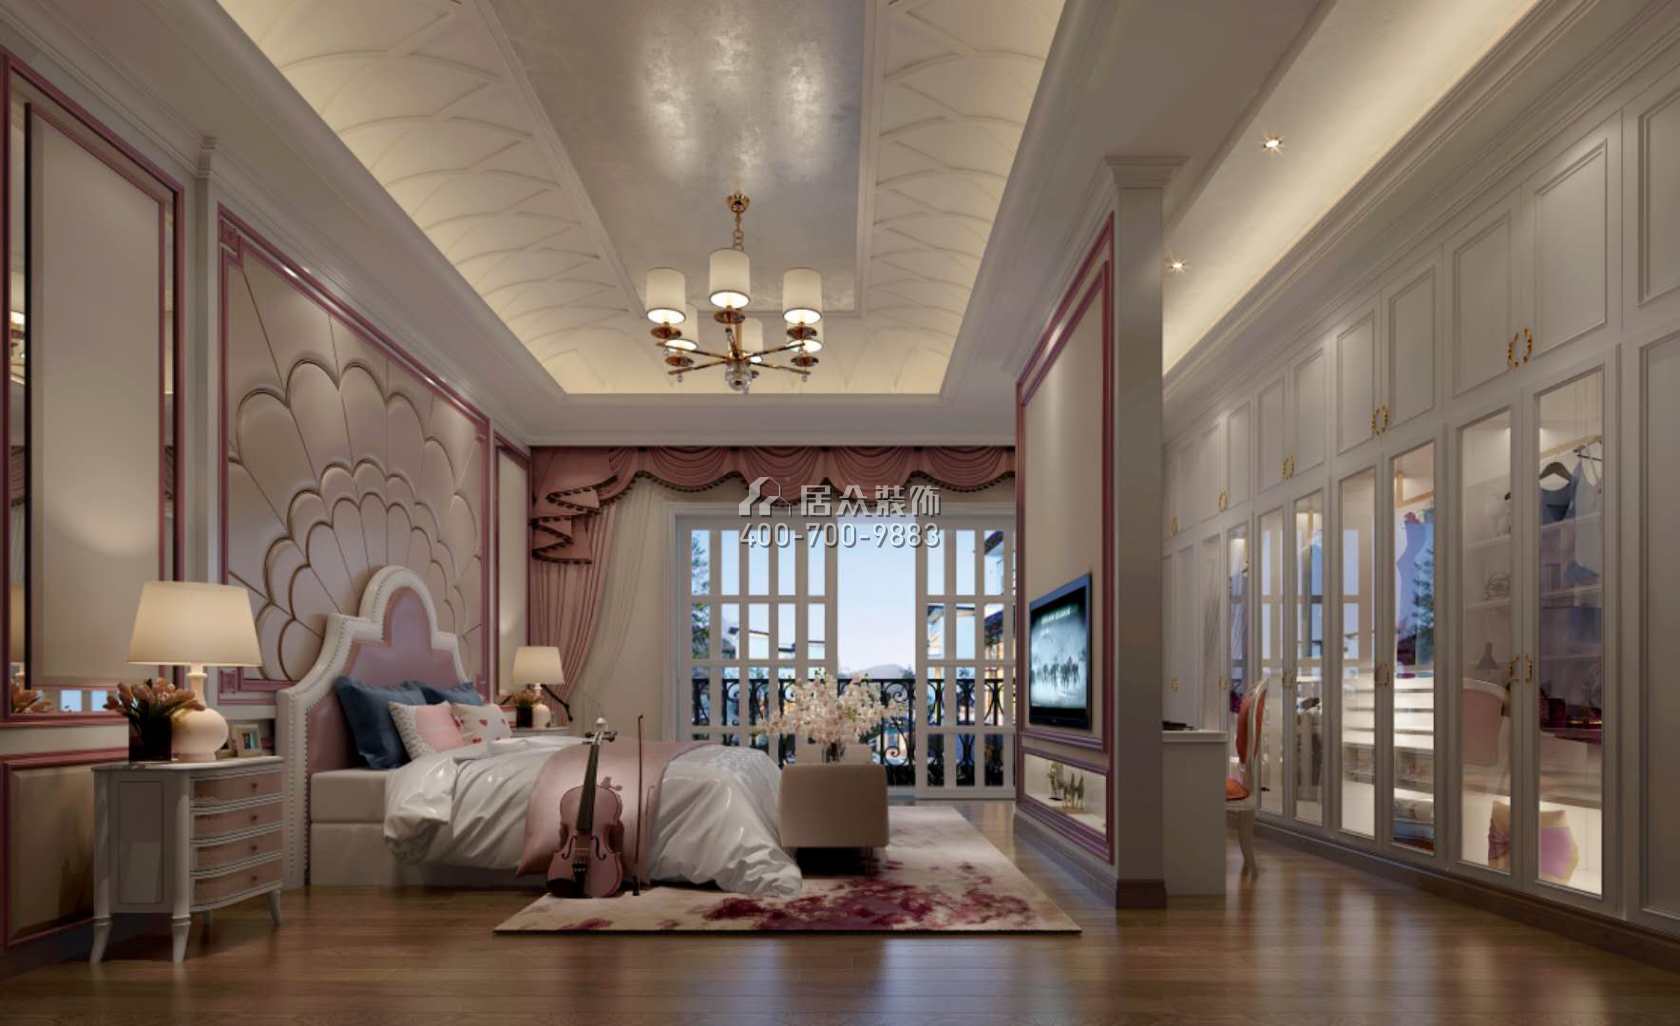 碧桂园太阳城405平方米欧式风格别墅户型卧室装修效果图